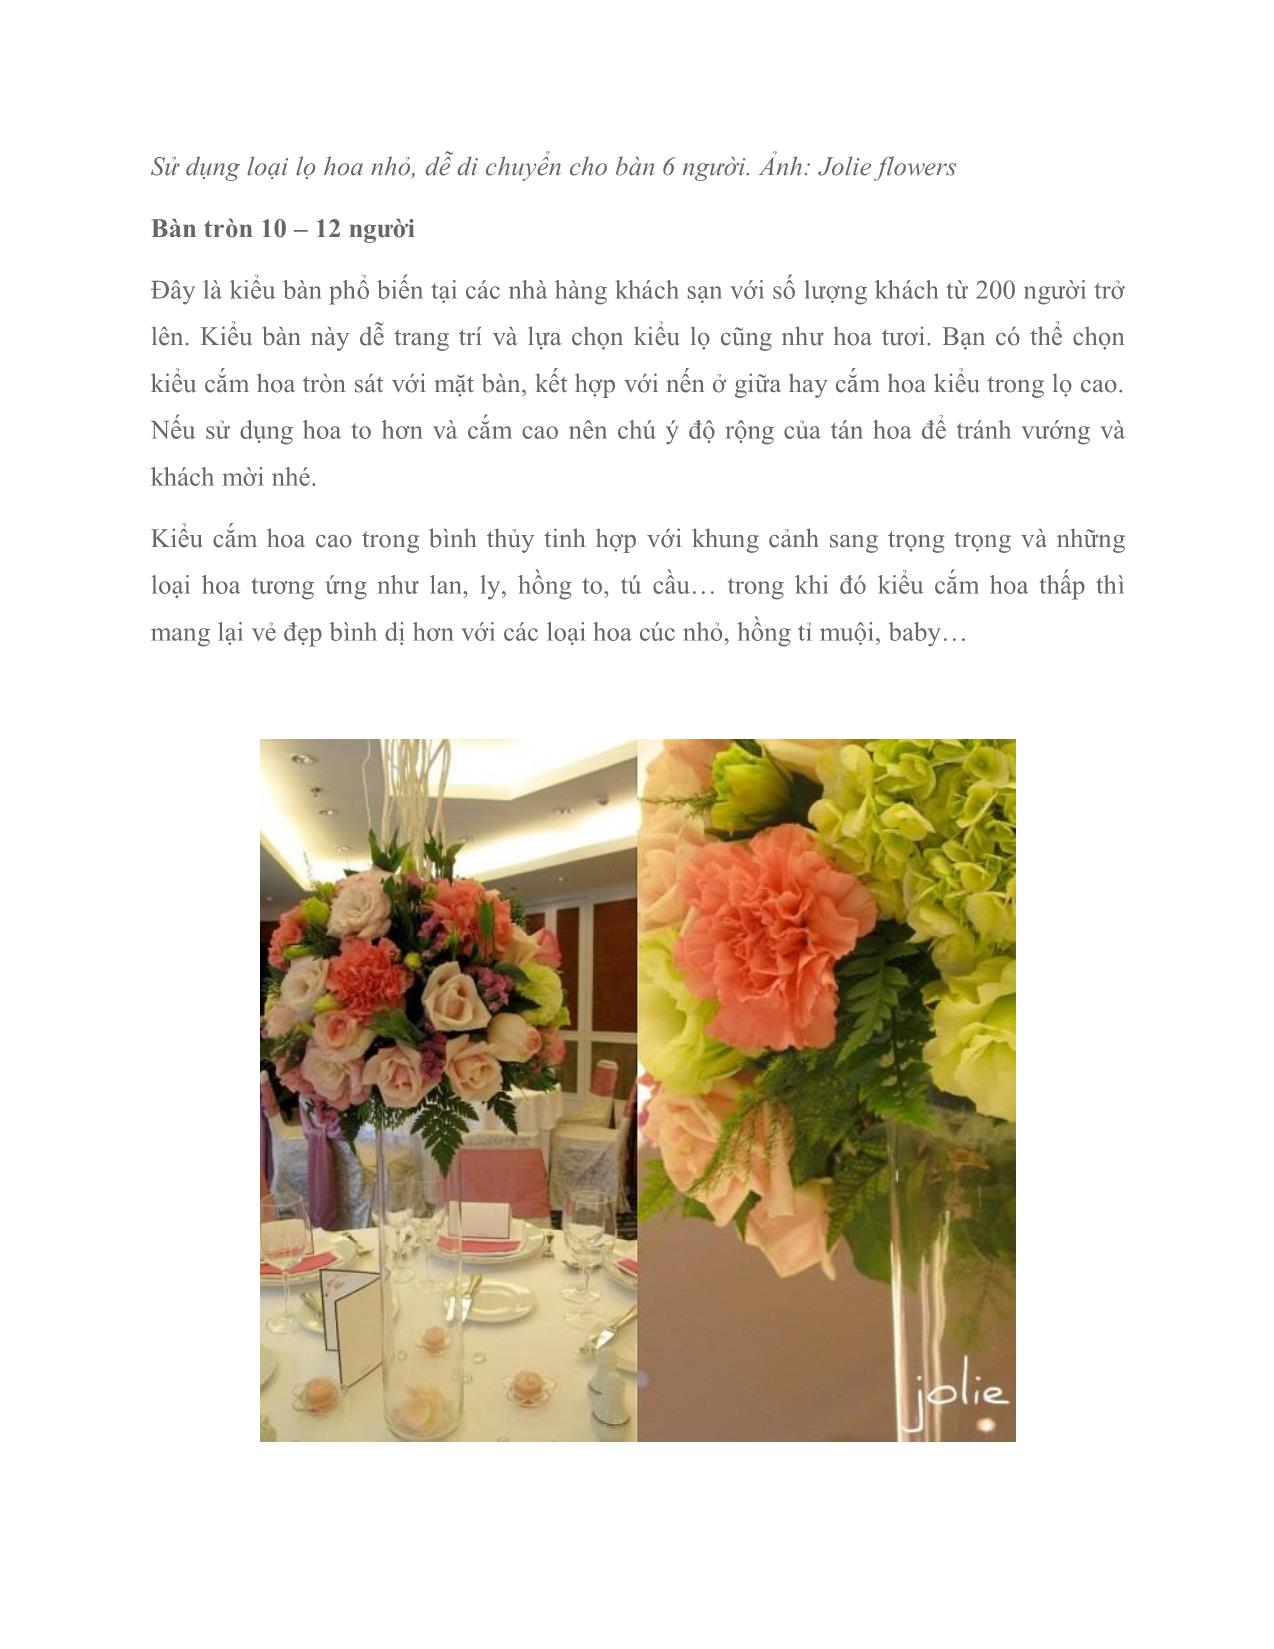 Trang trí hoa cho bàn tiệc trong ngày cưới trang 2